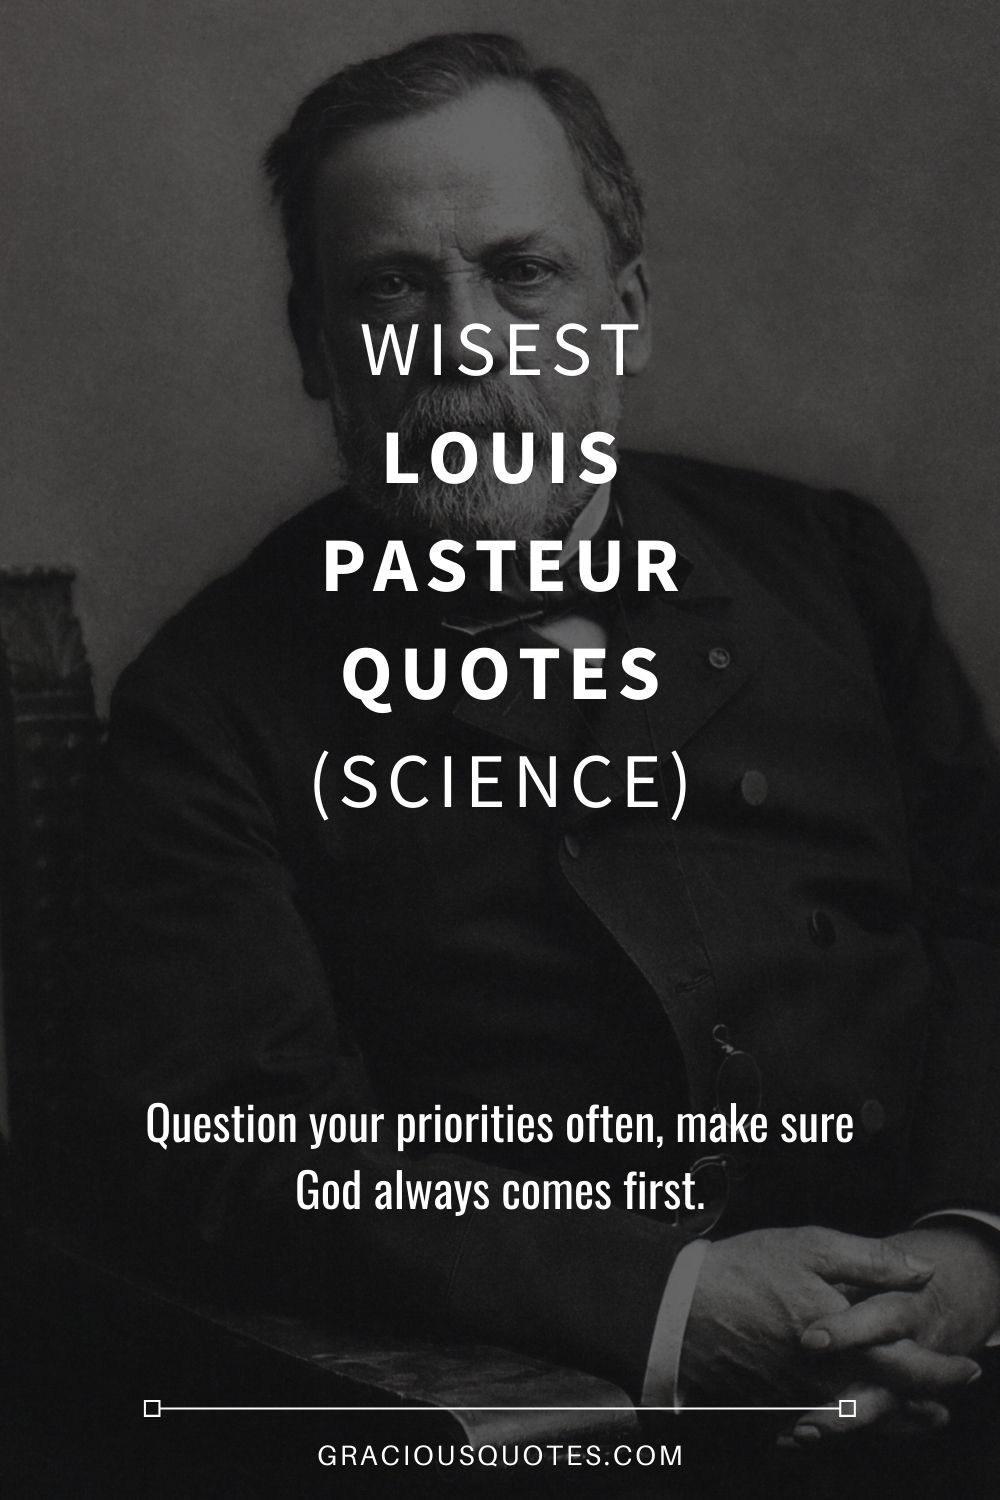 Wisest Louis Pasteur Quotes (SCIENCE) - Gracious Quotes